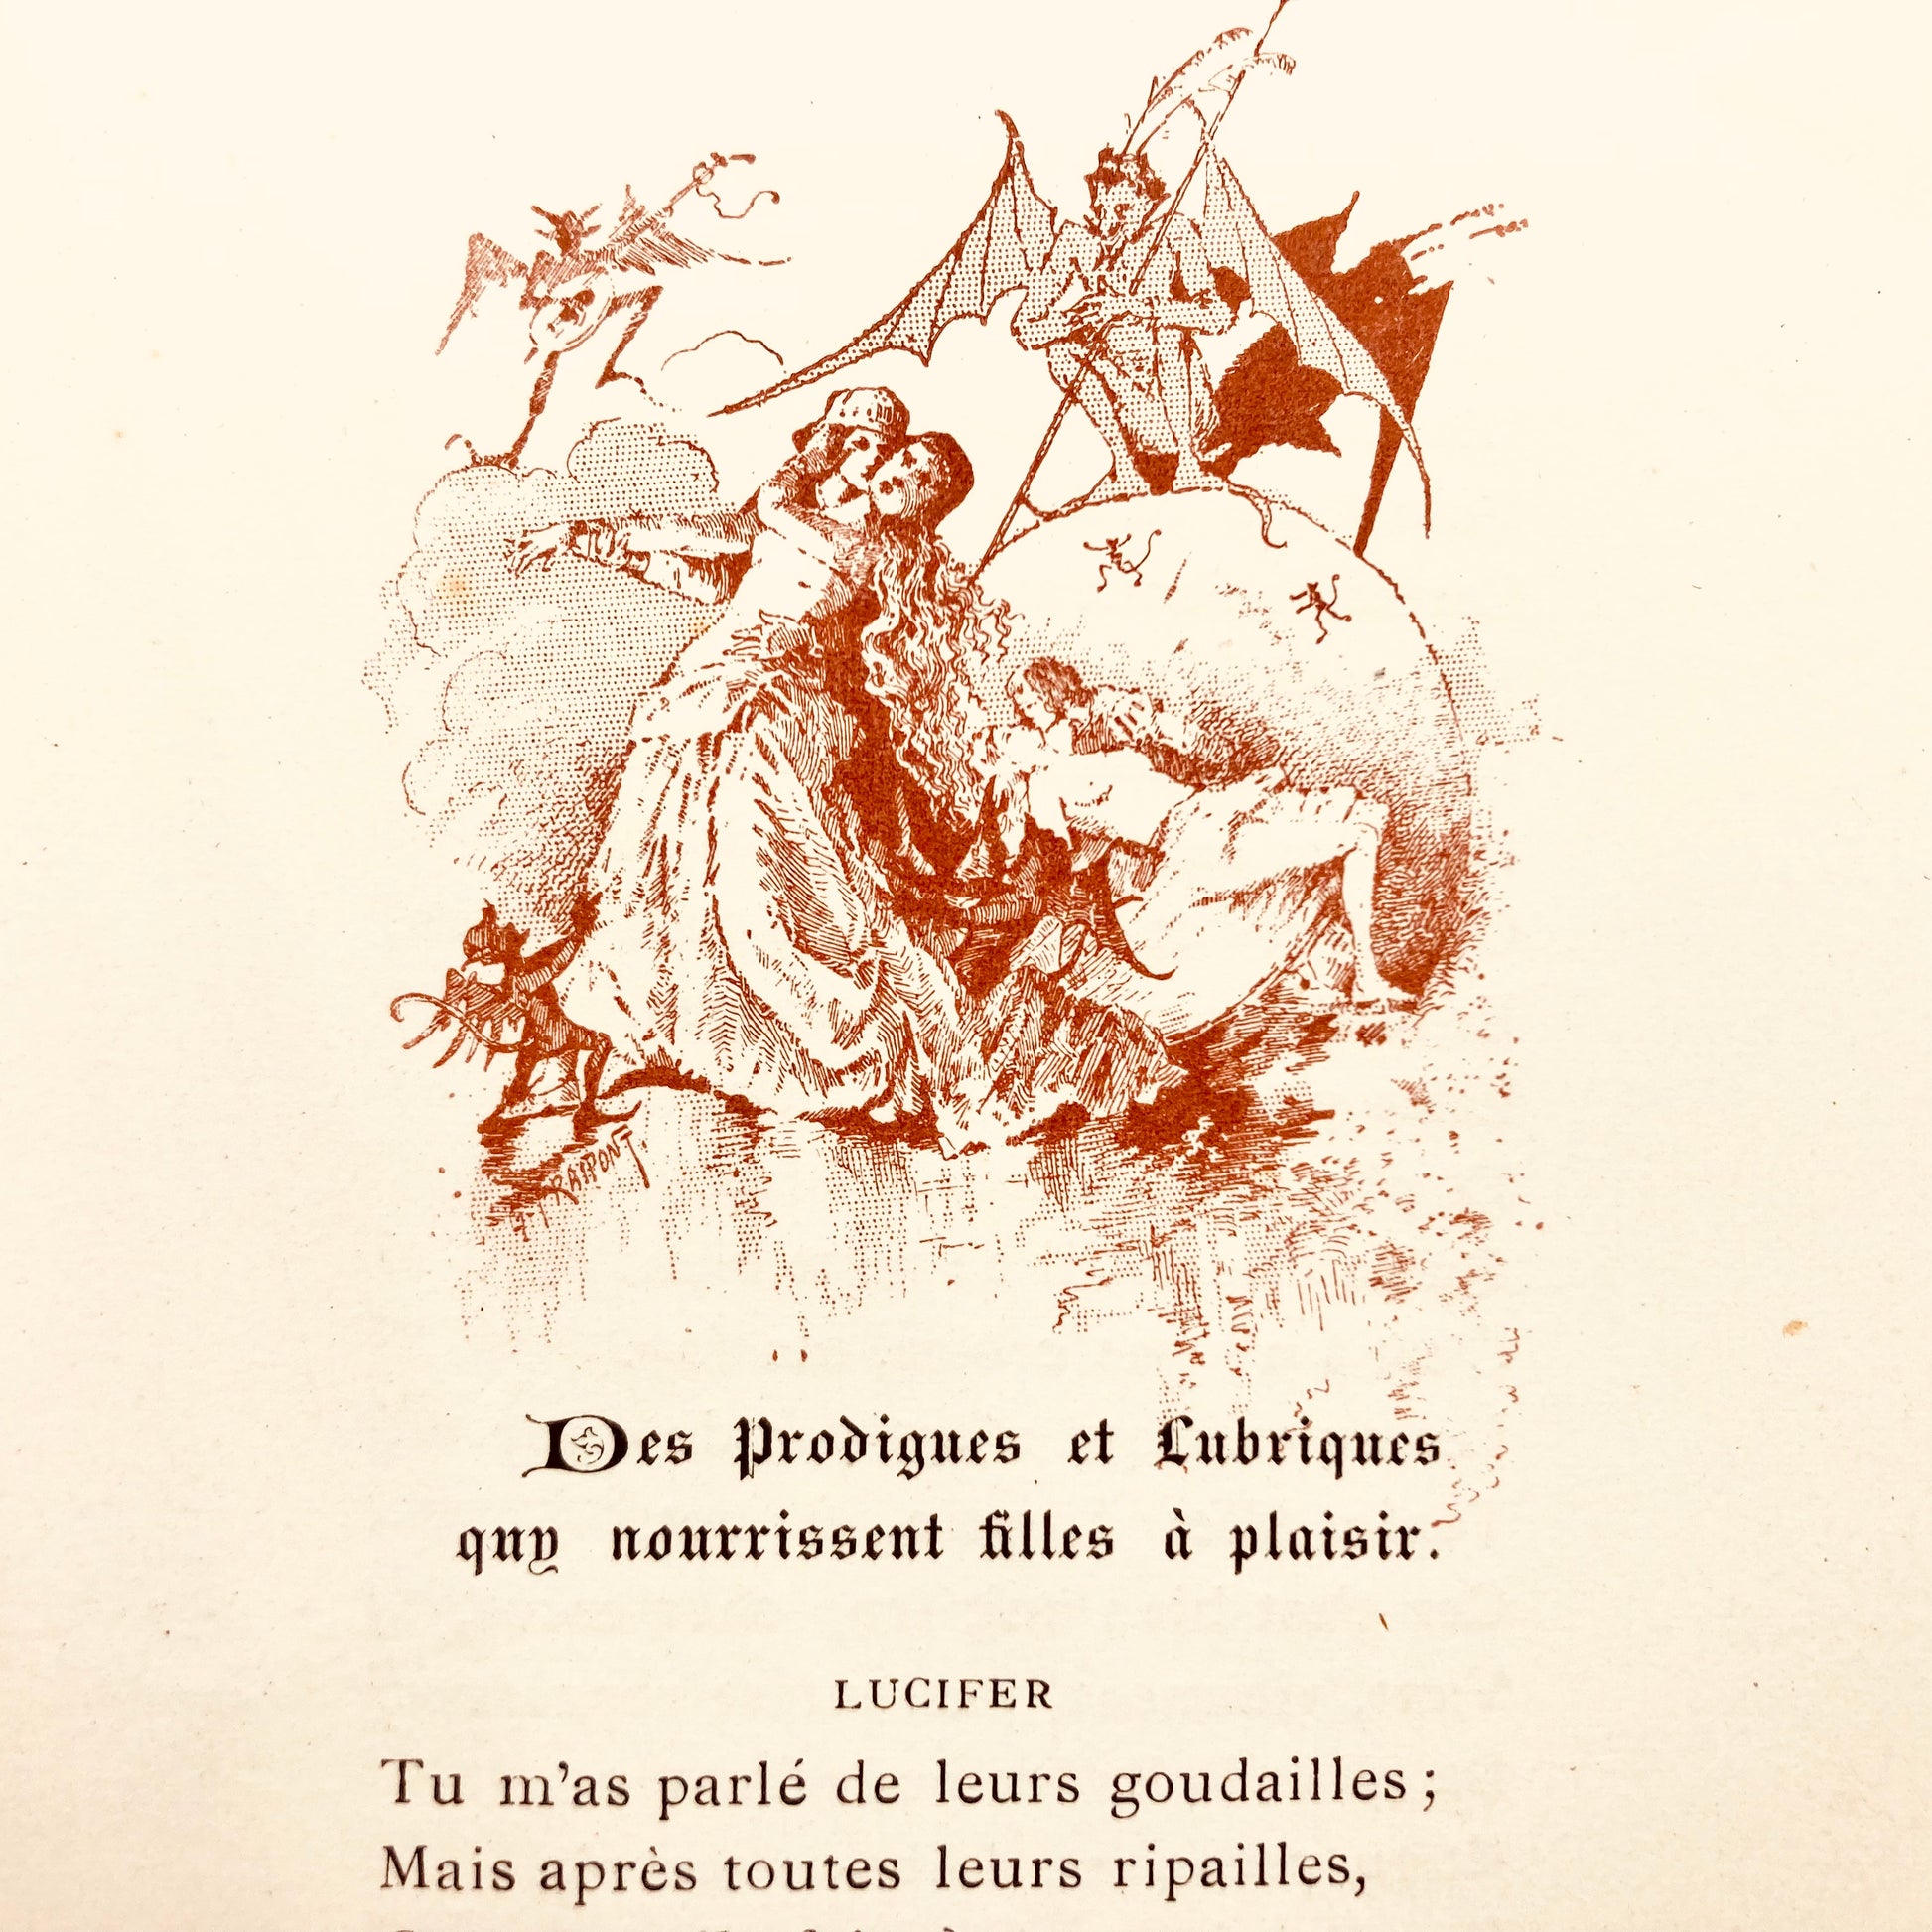 D'AMERVAL, Eloy "La Grande Diablerie" [Georges Hurtel, 1884] - Buzz Bookstore